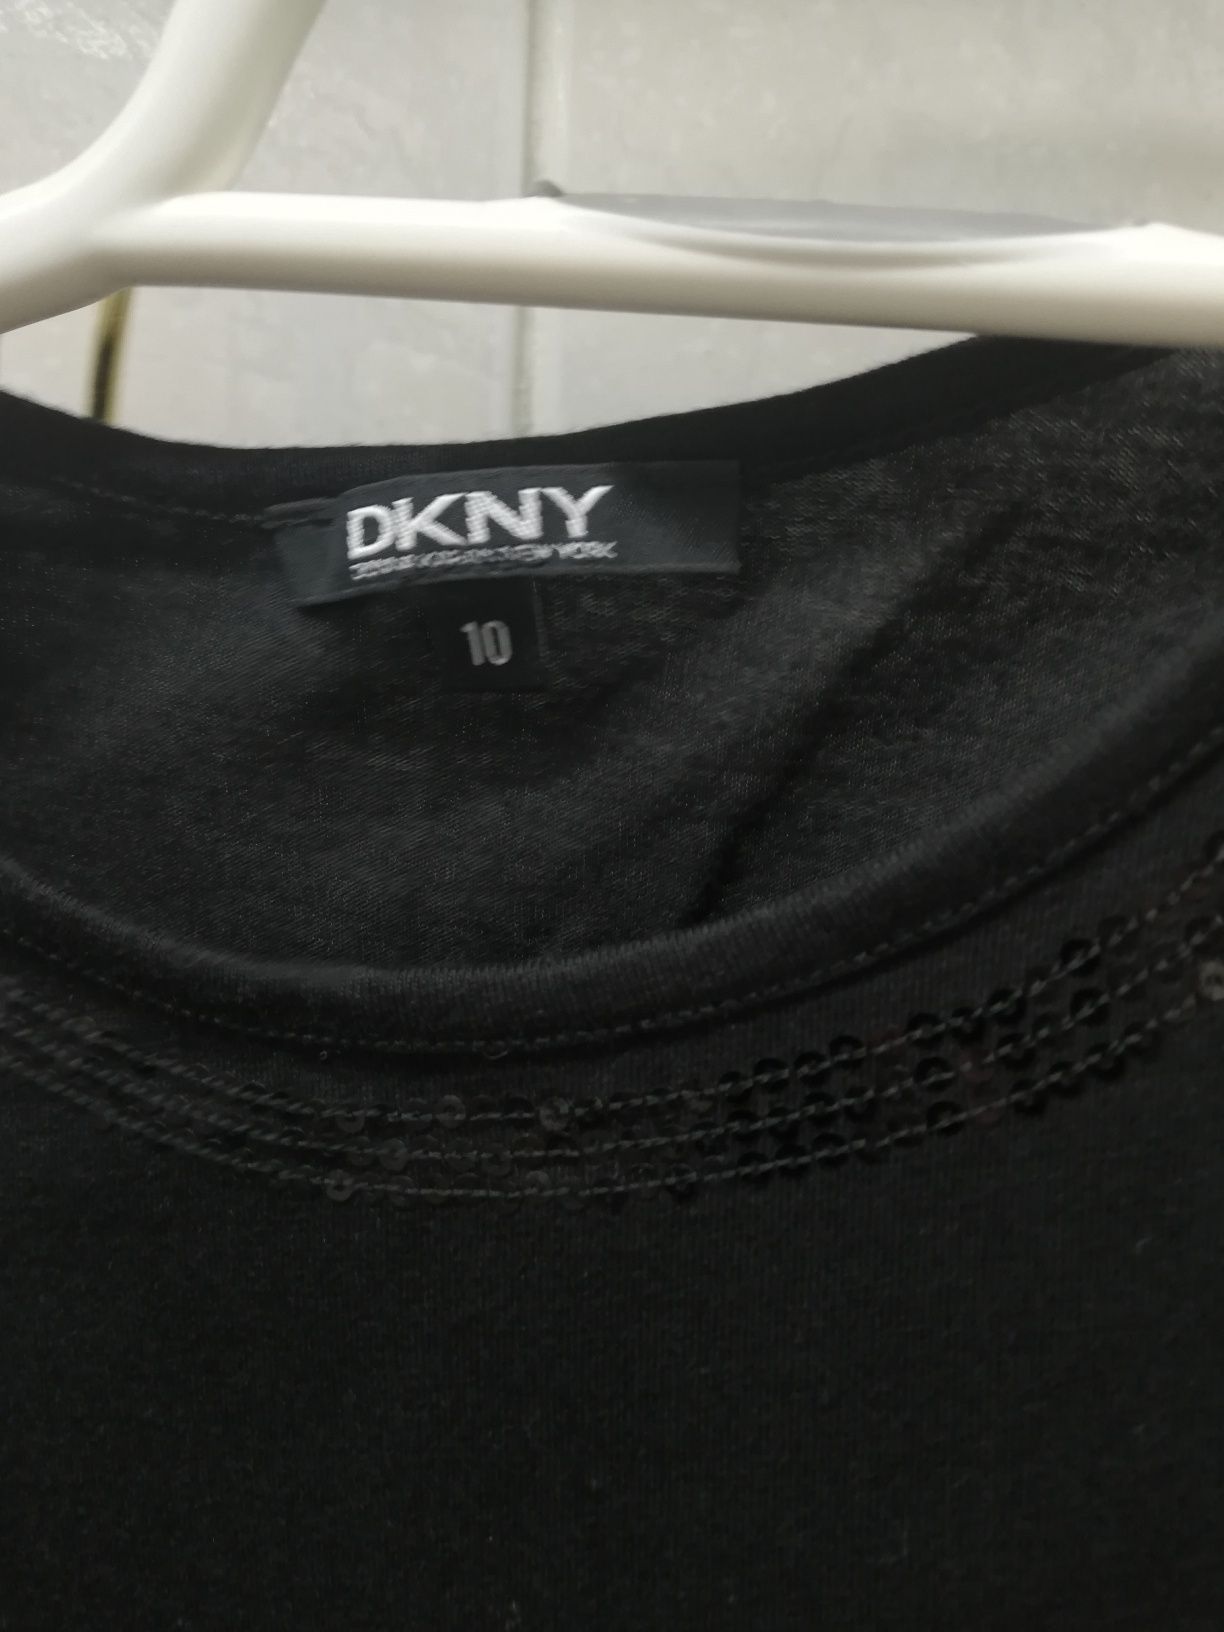 Bluza DKNY pt 10 ani